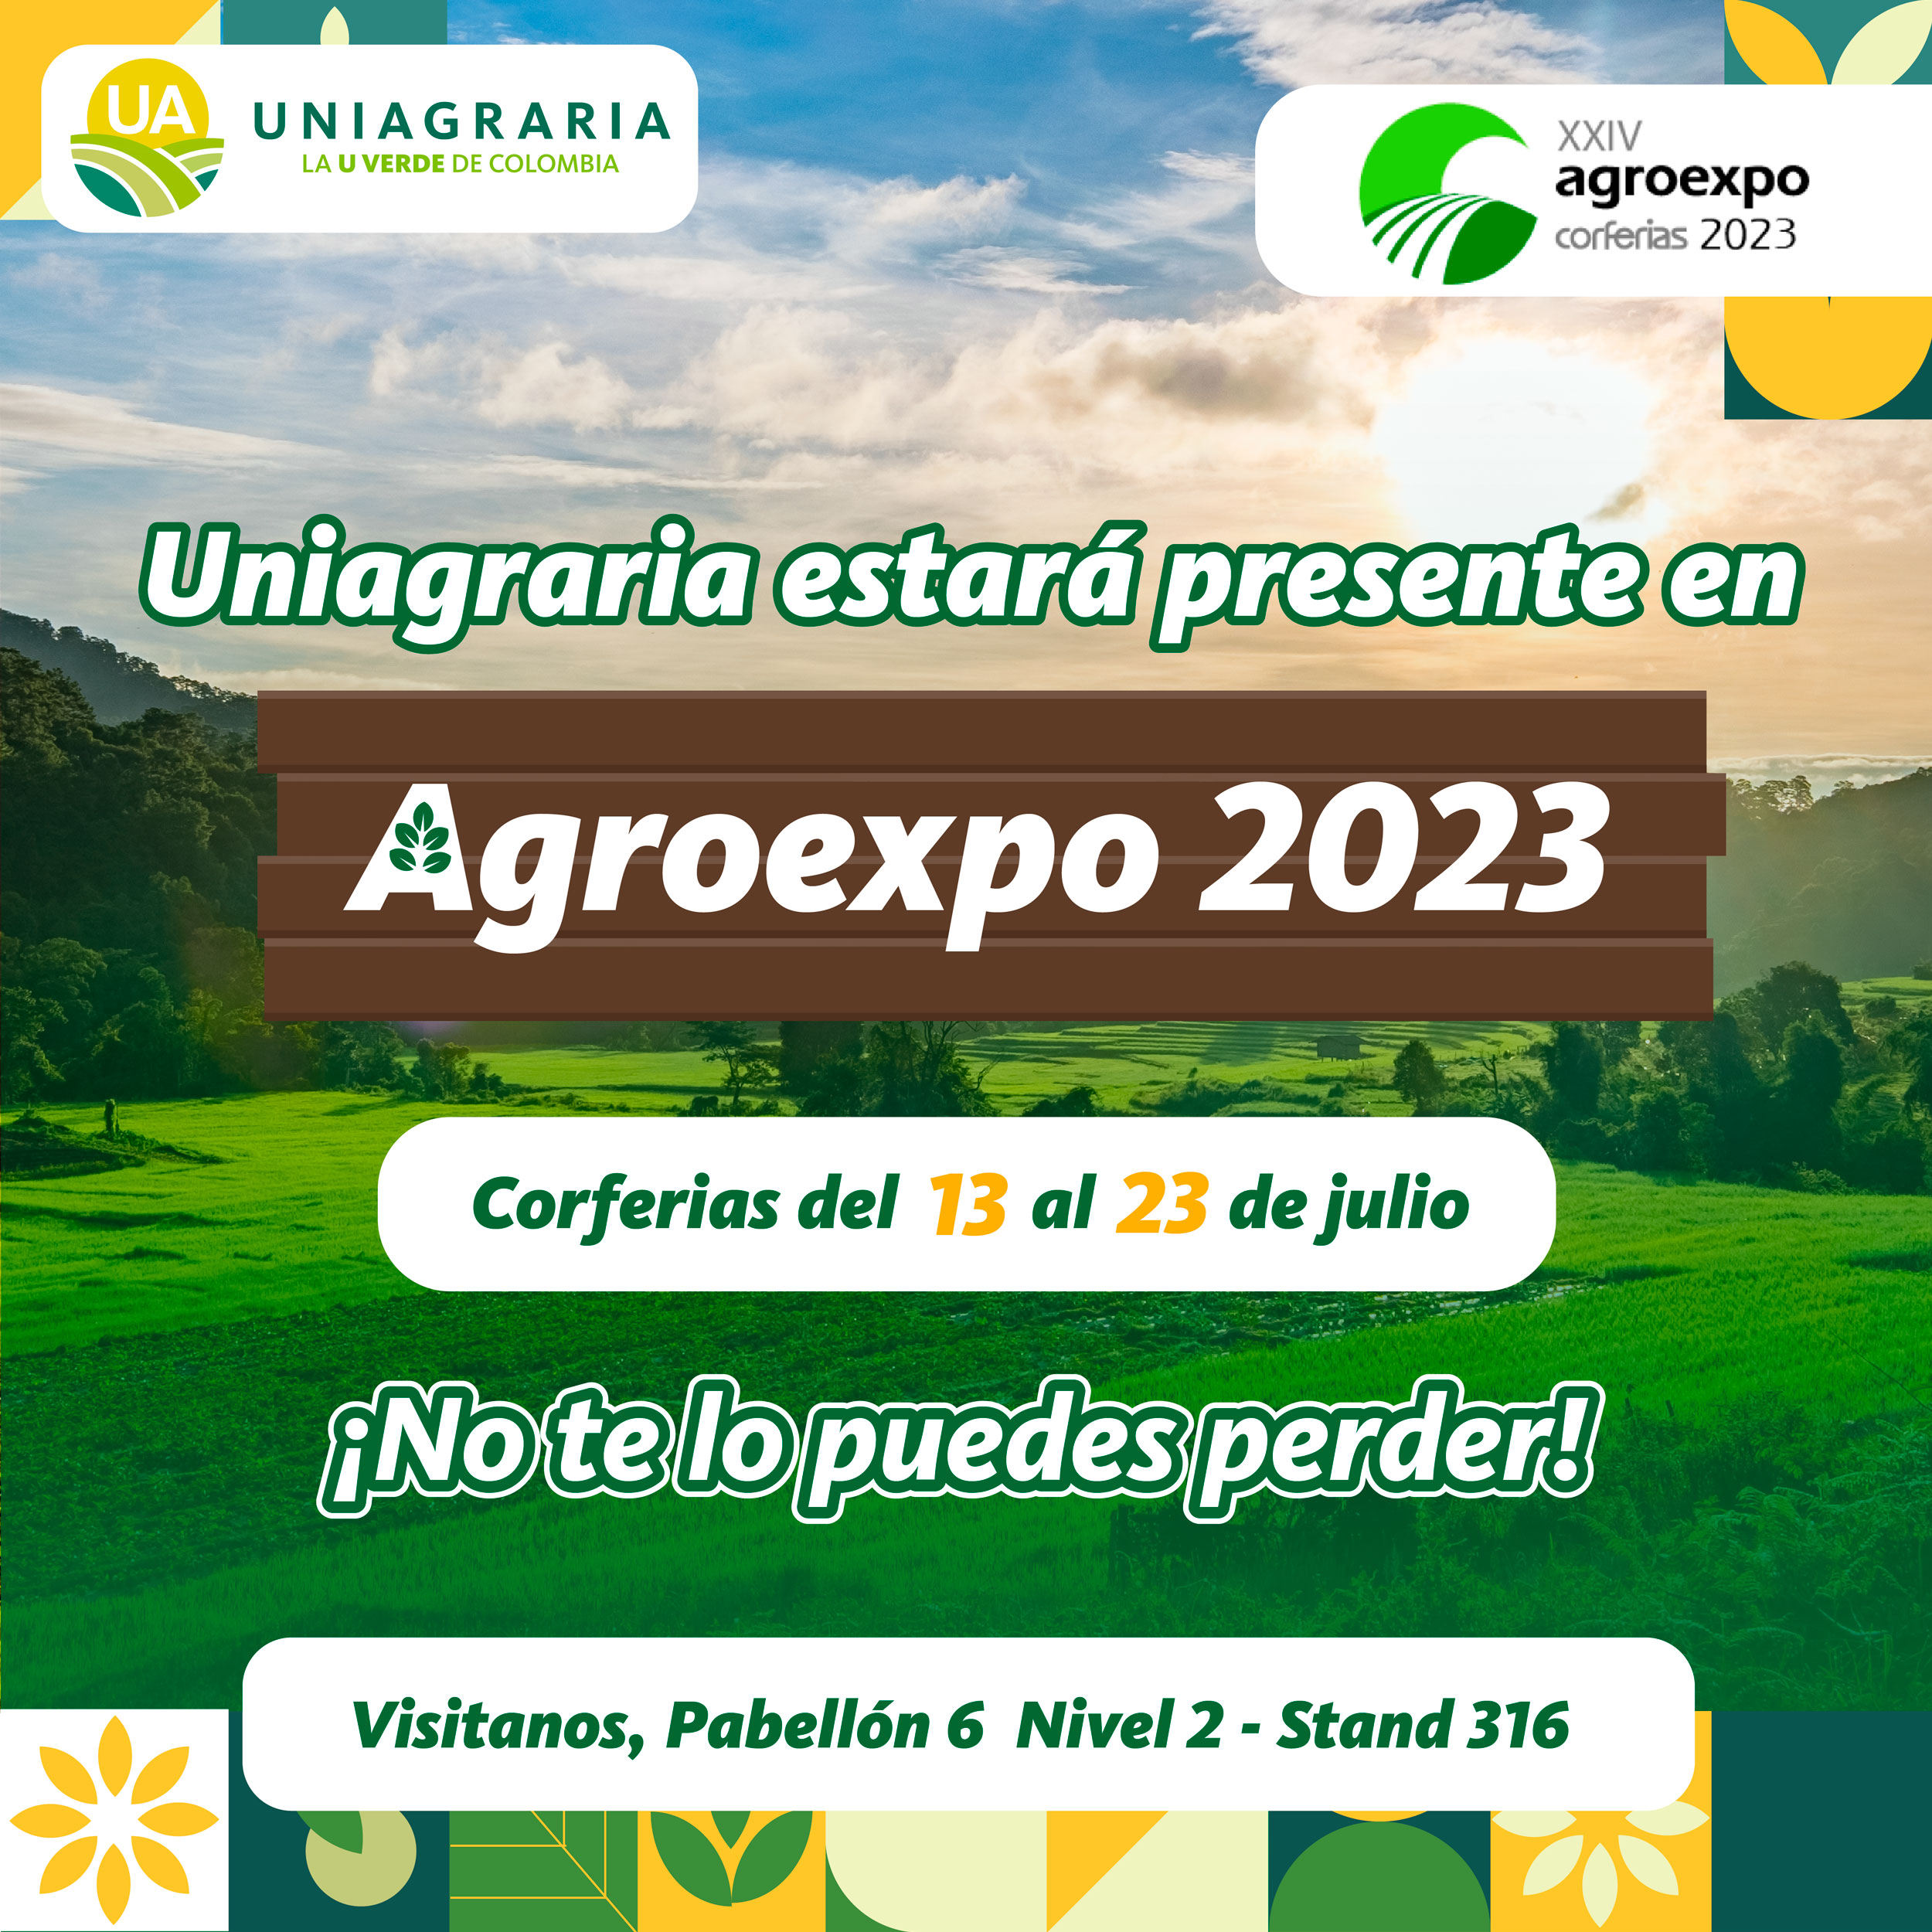 Agroexpo 2023 ¡No te lo puedes perder!